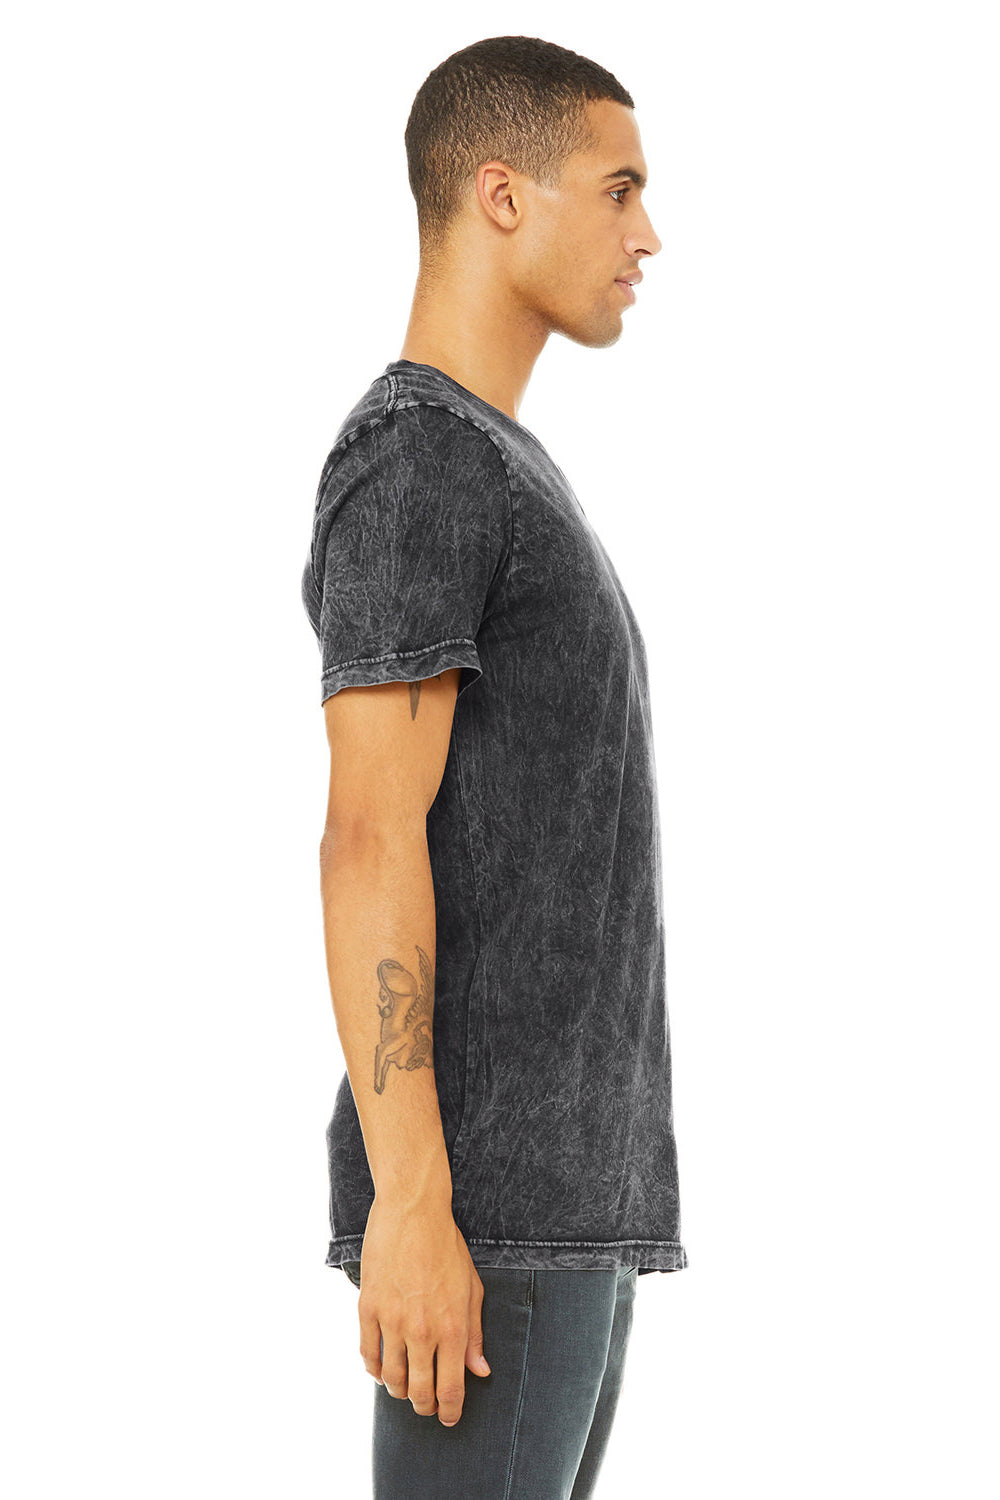 Bella + Canvas BC3005/3005/3655C Mens Jersey Short Sleeve V-Neck T-Shirt Black Mineral Wash Model Side